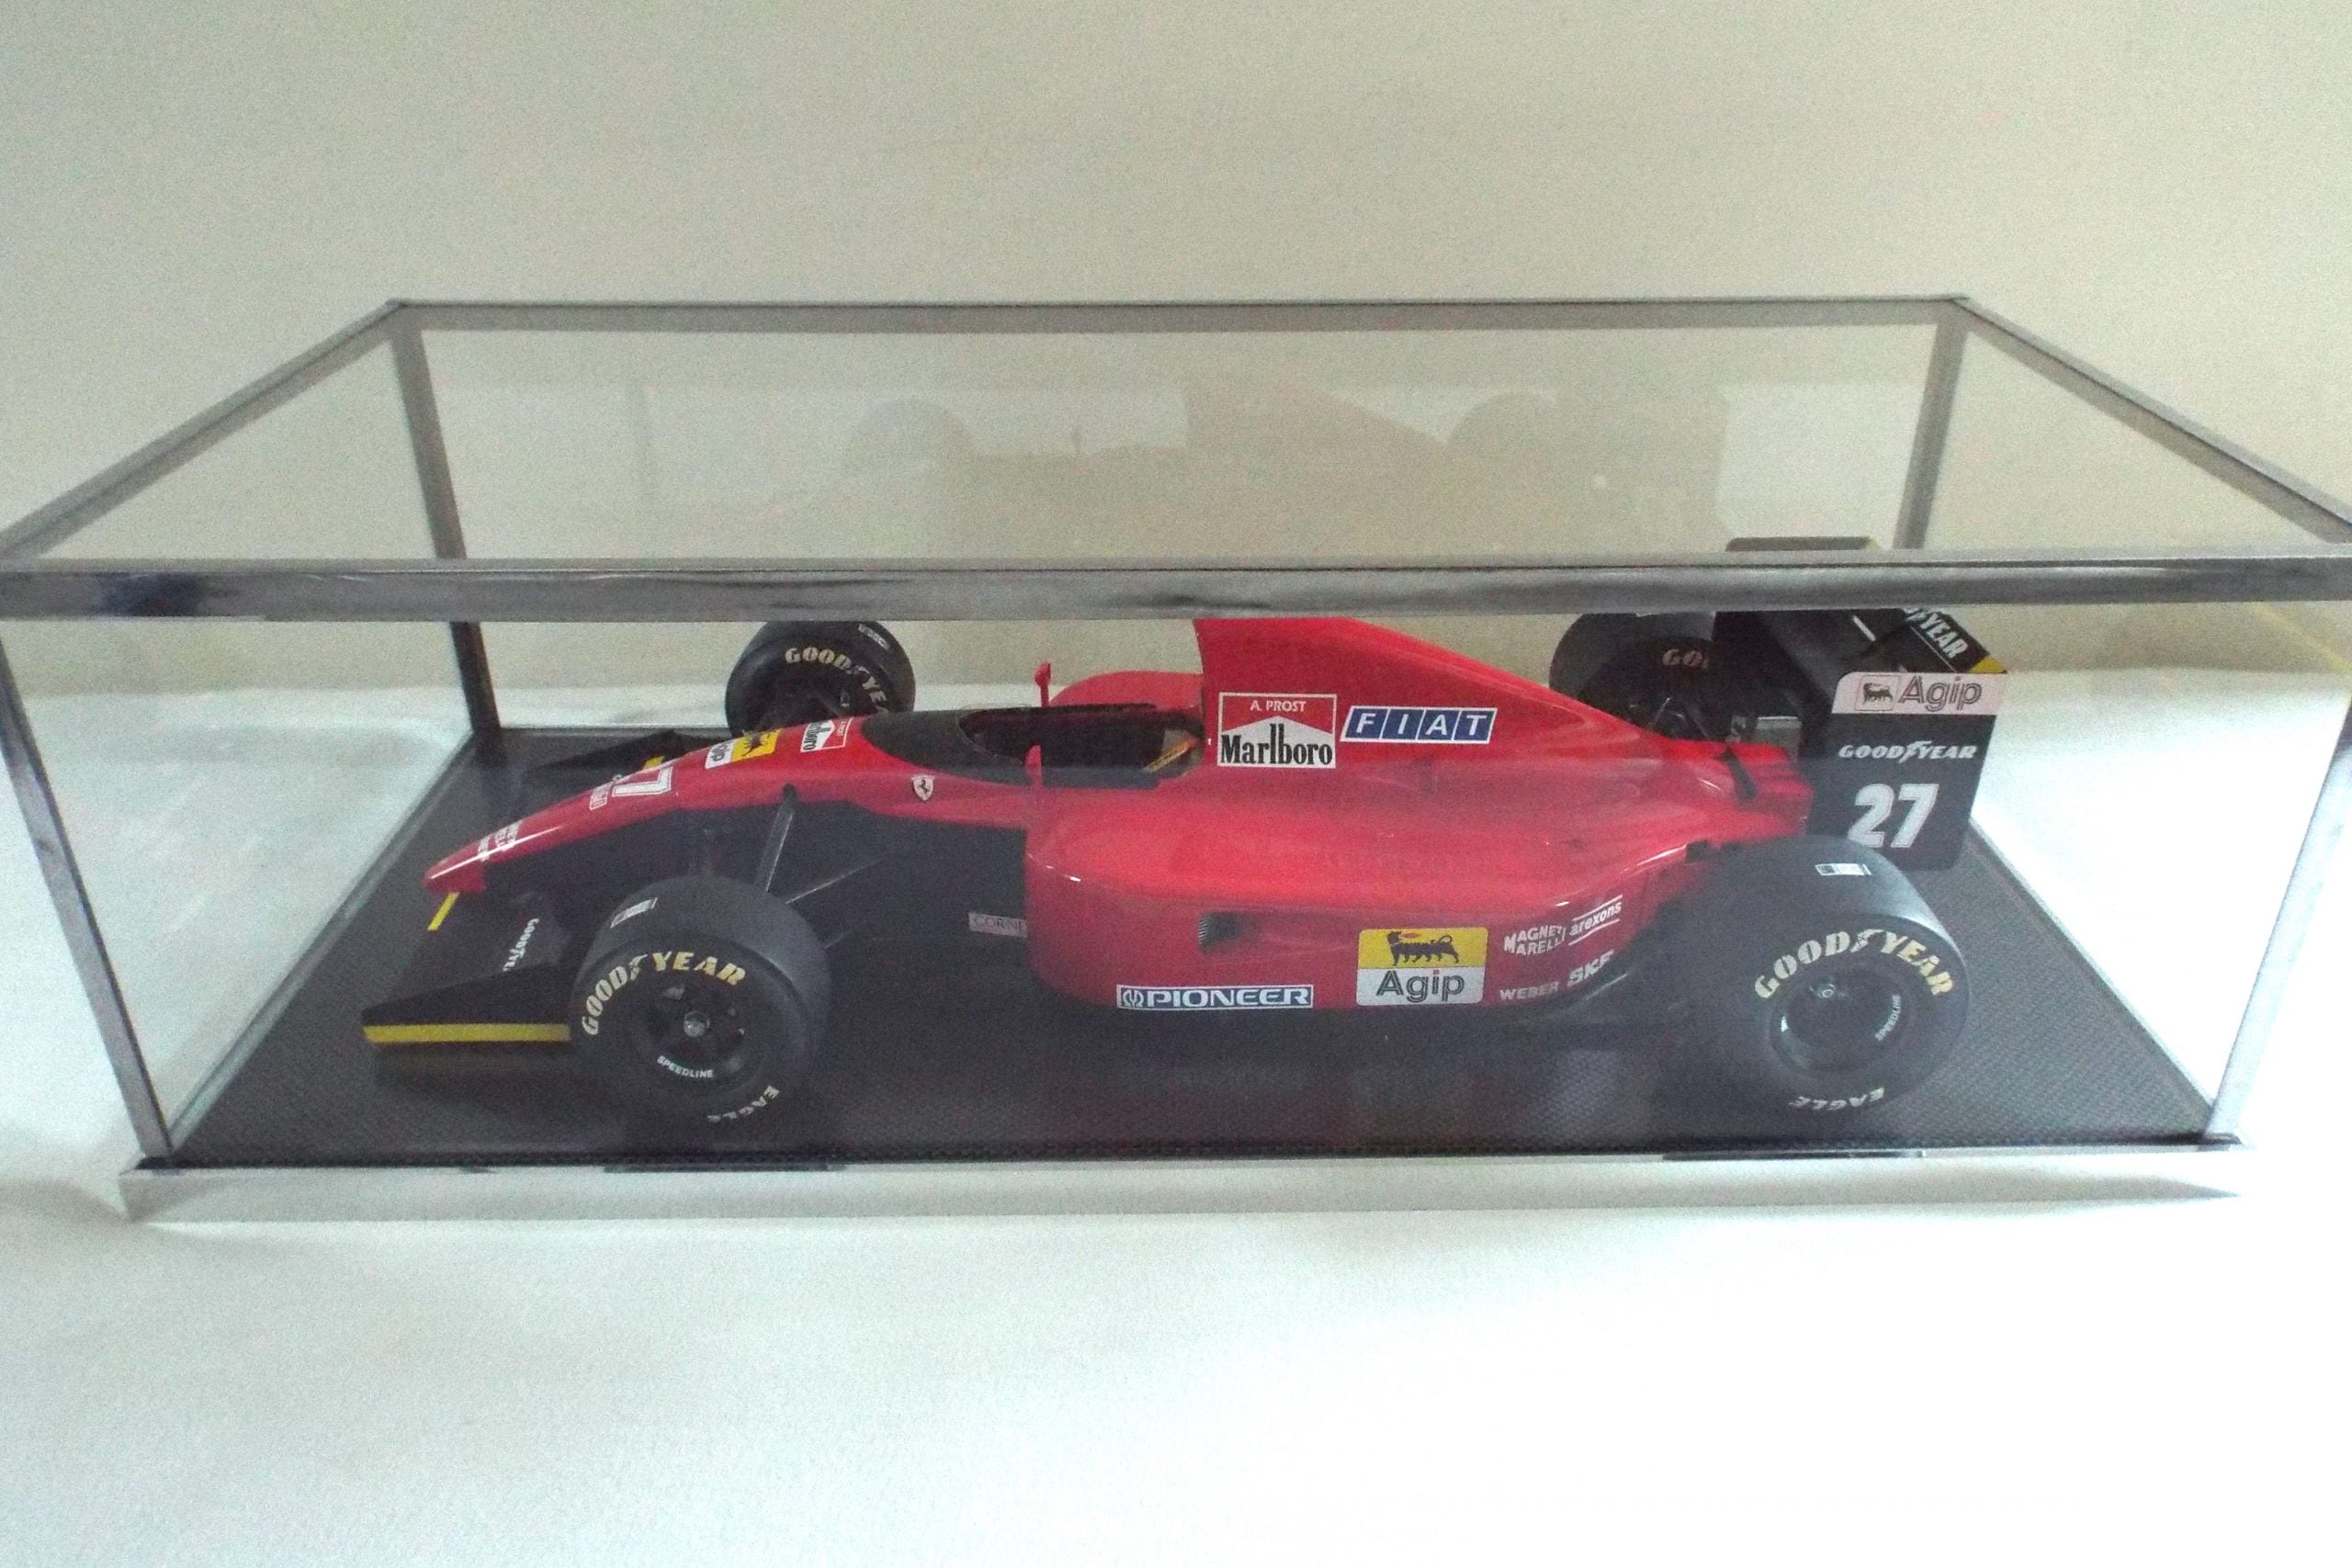 Rosso escala 1:8 Ferrari 643